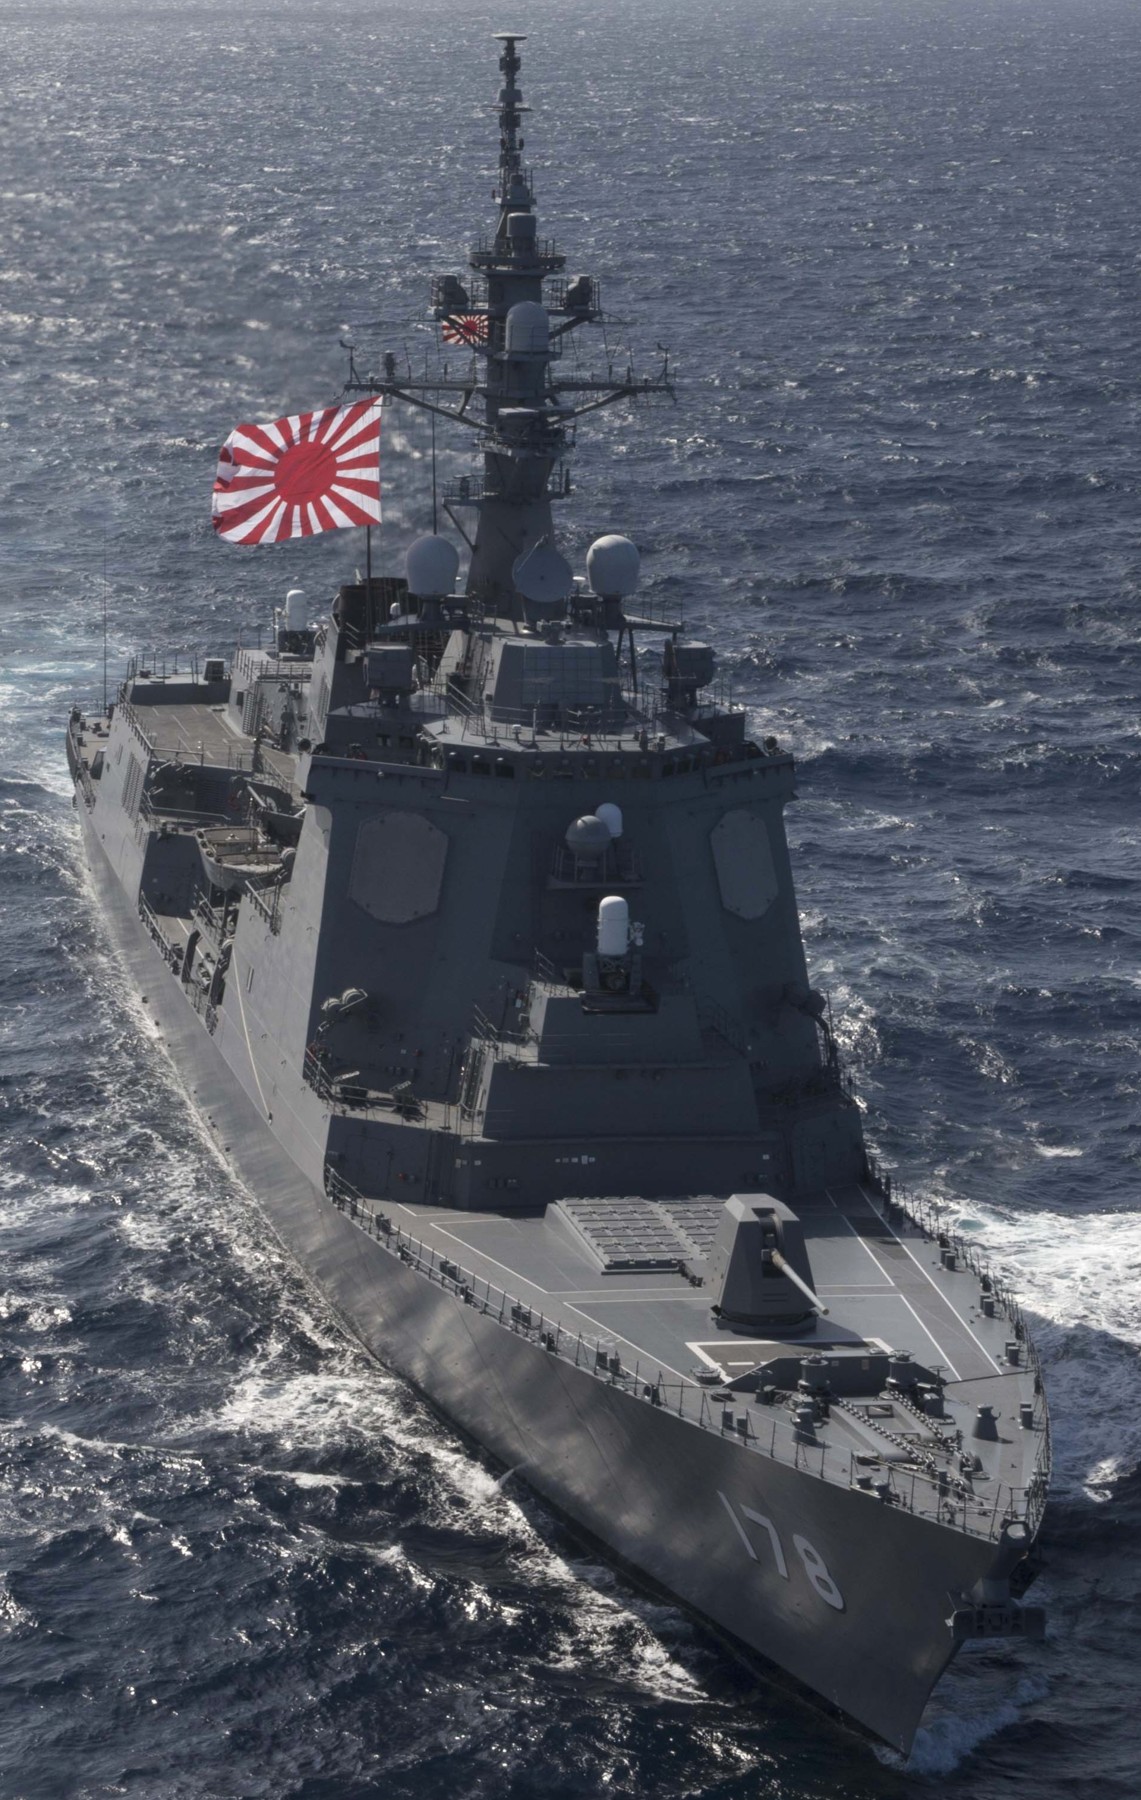 ddg-178 jds ashigara guided missile destroyer japan maritime self defense force jmsdf 20